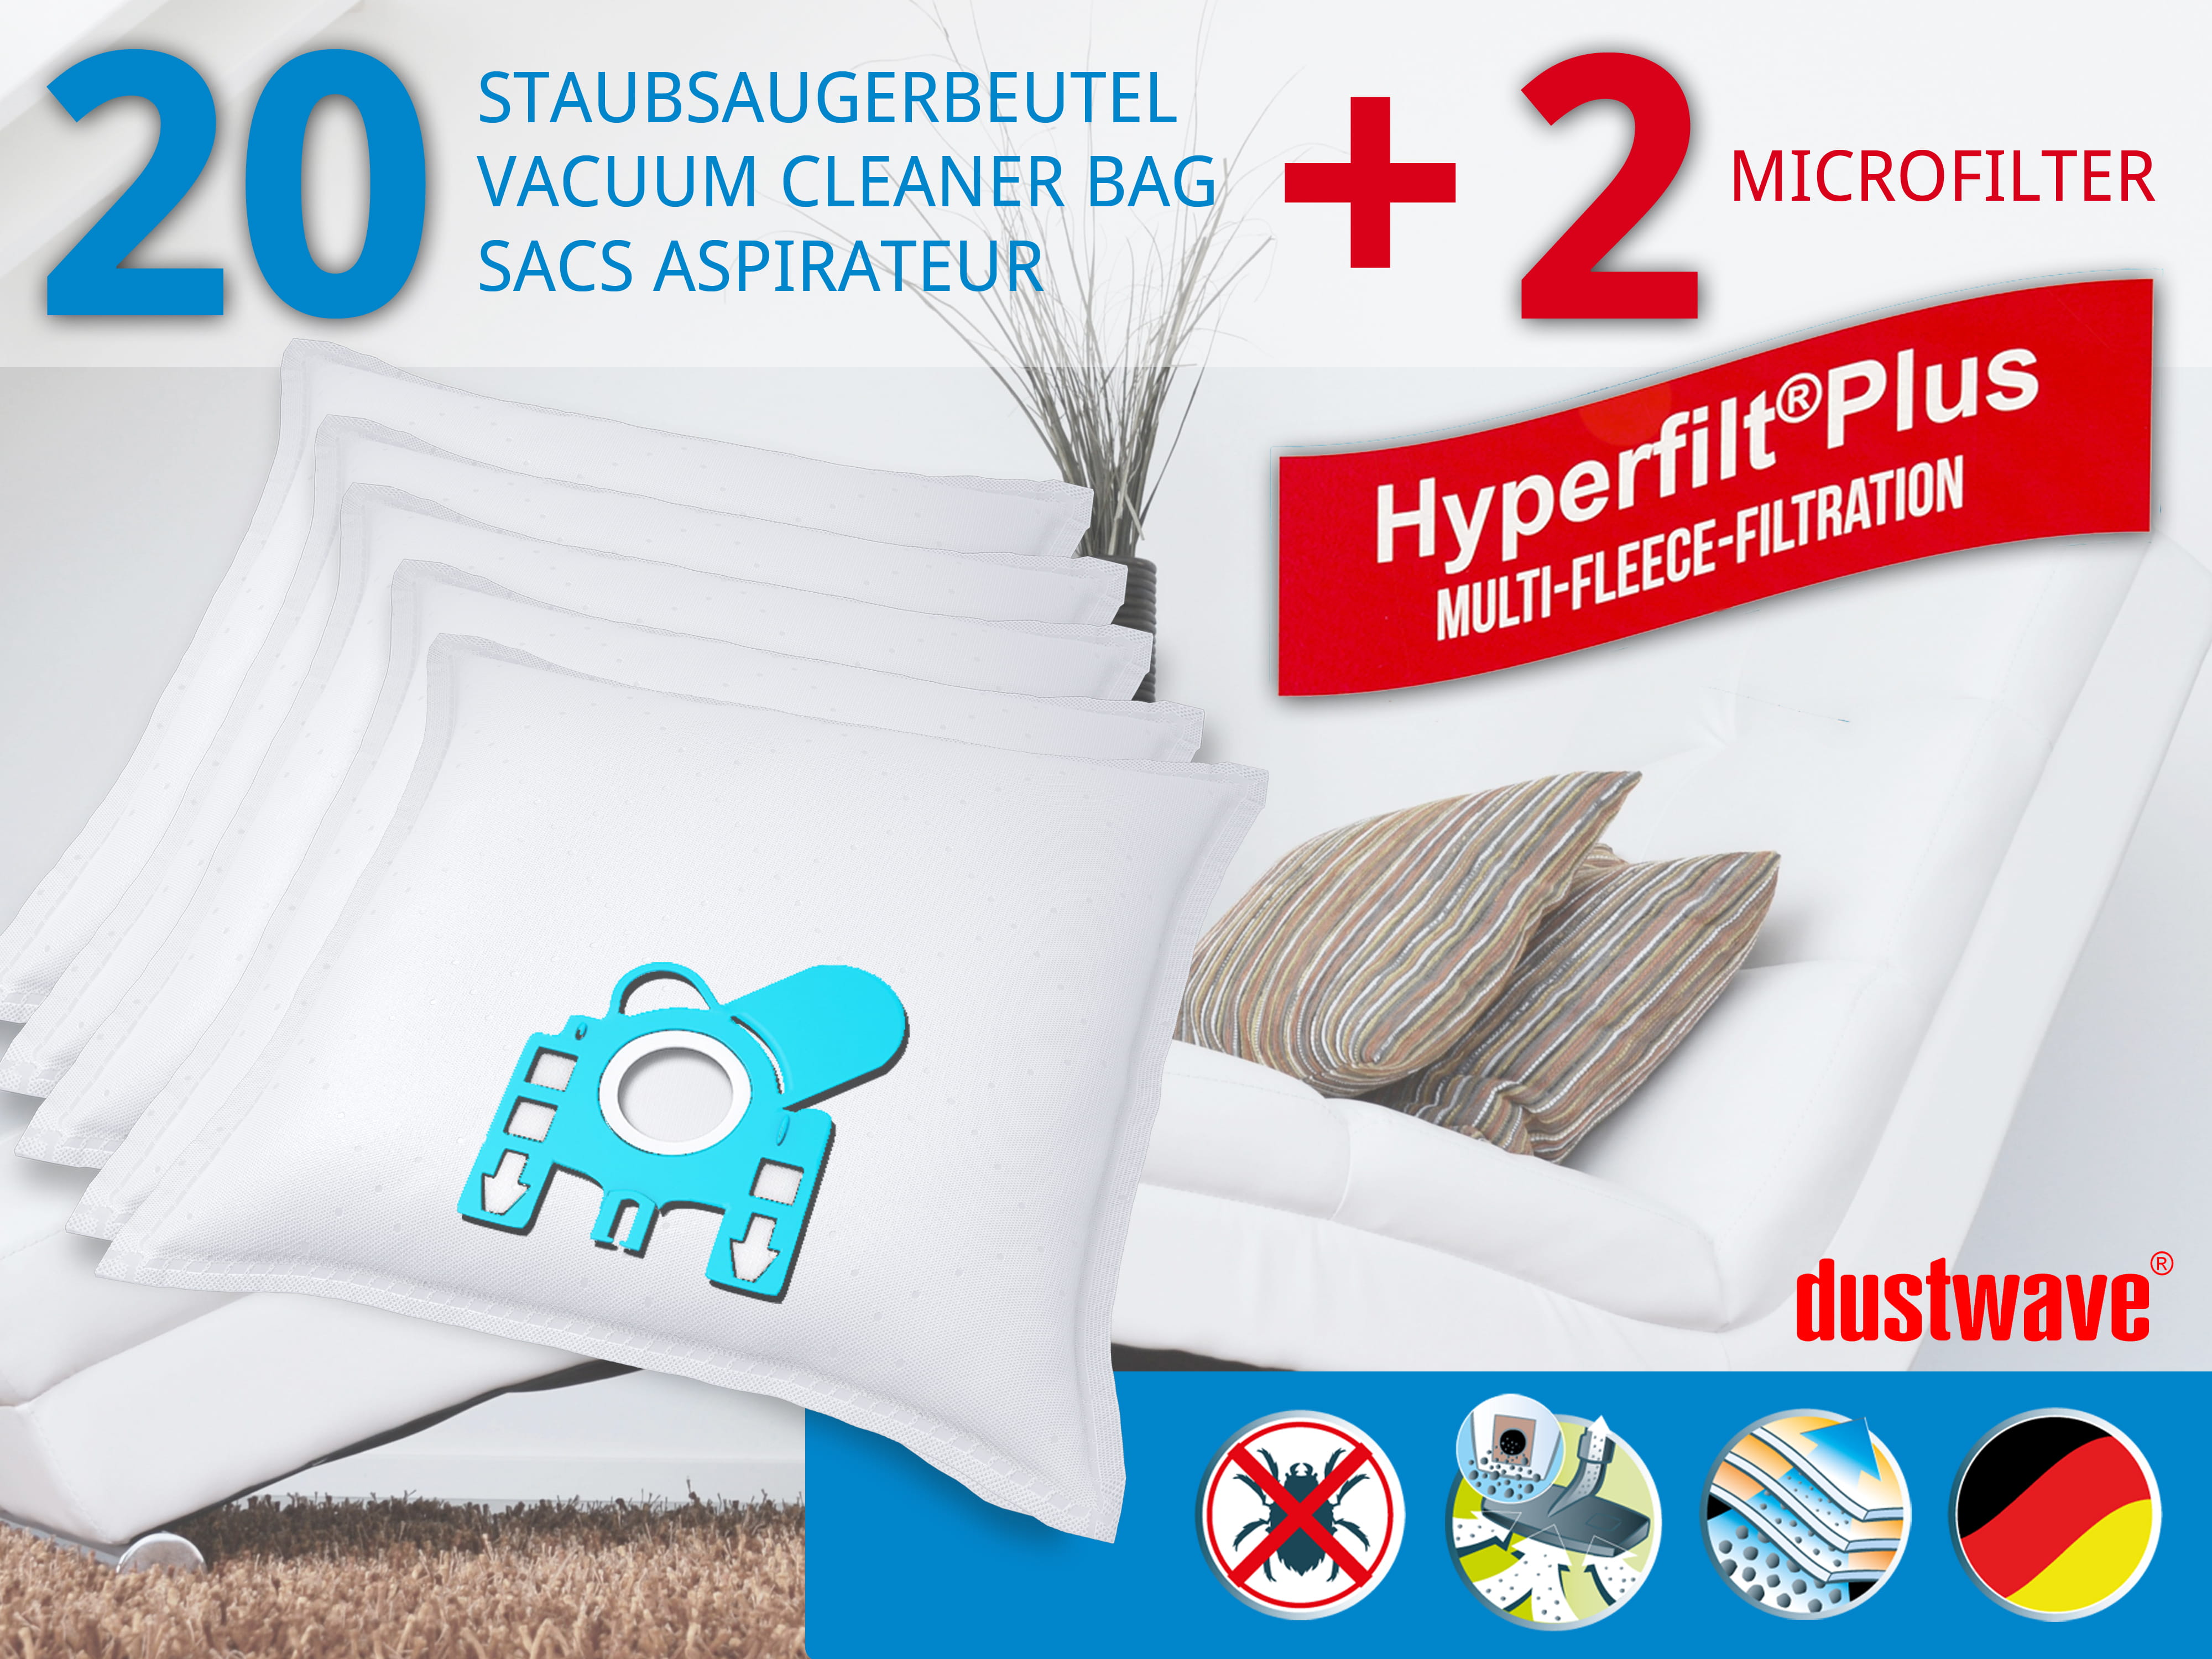 Dustwave® 20 Staubsaugerbeutel für Miele S5421 / S 5421 - hocheffizient, mehrlagiges Mikrovlies mit Hygieneverschluss - Made in Germany